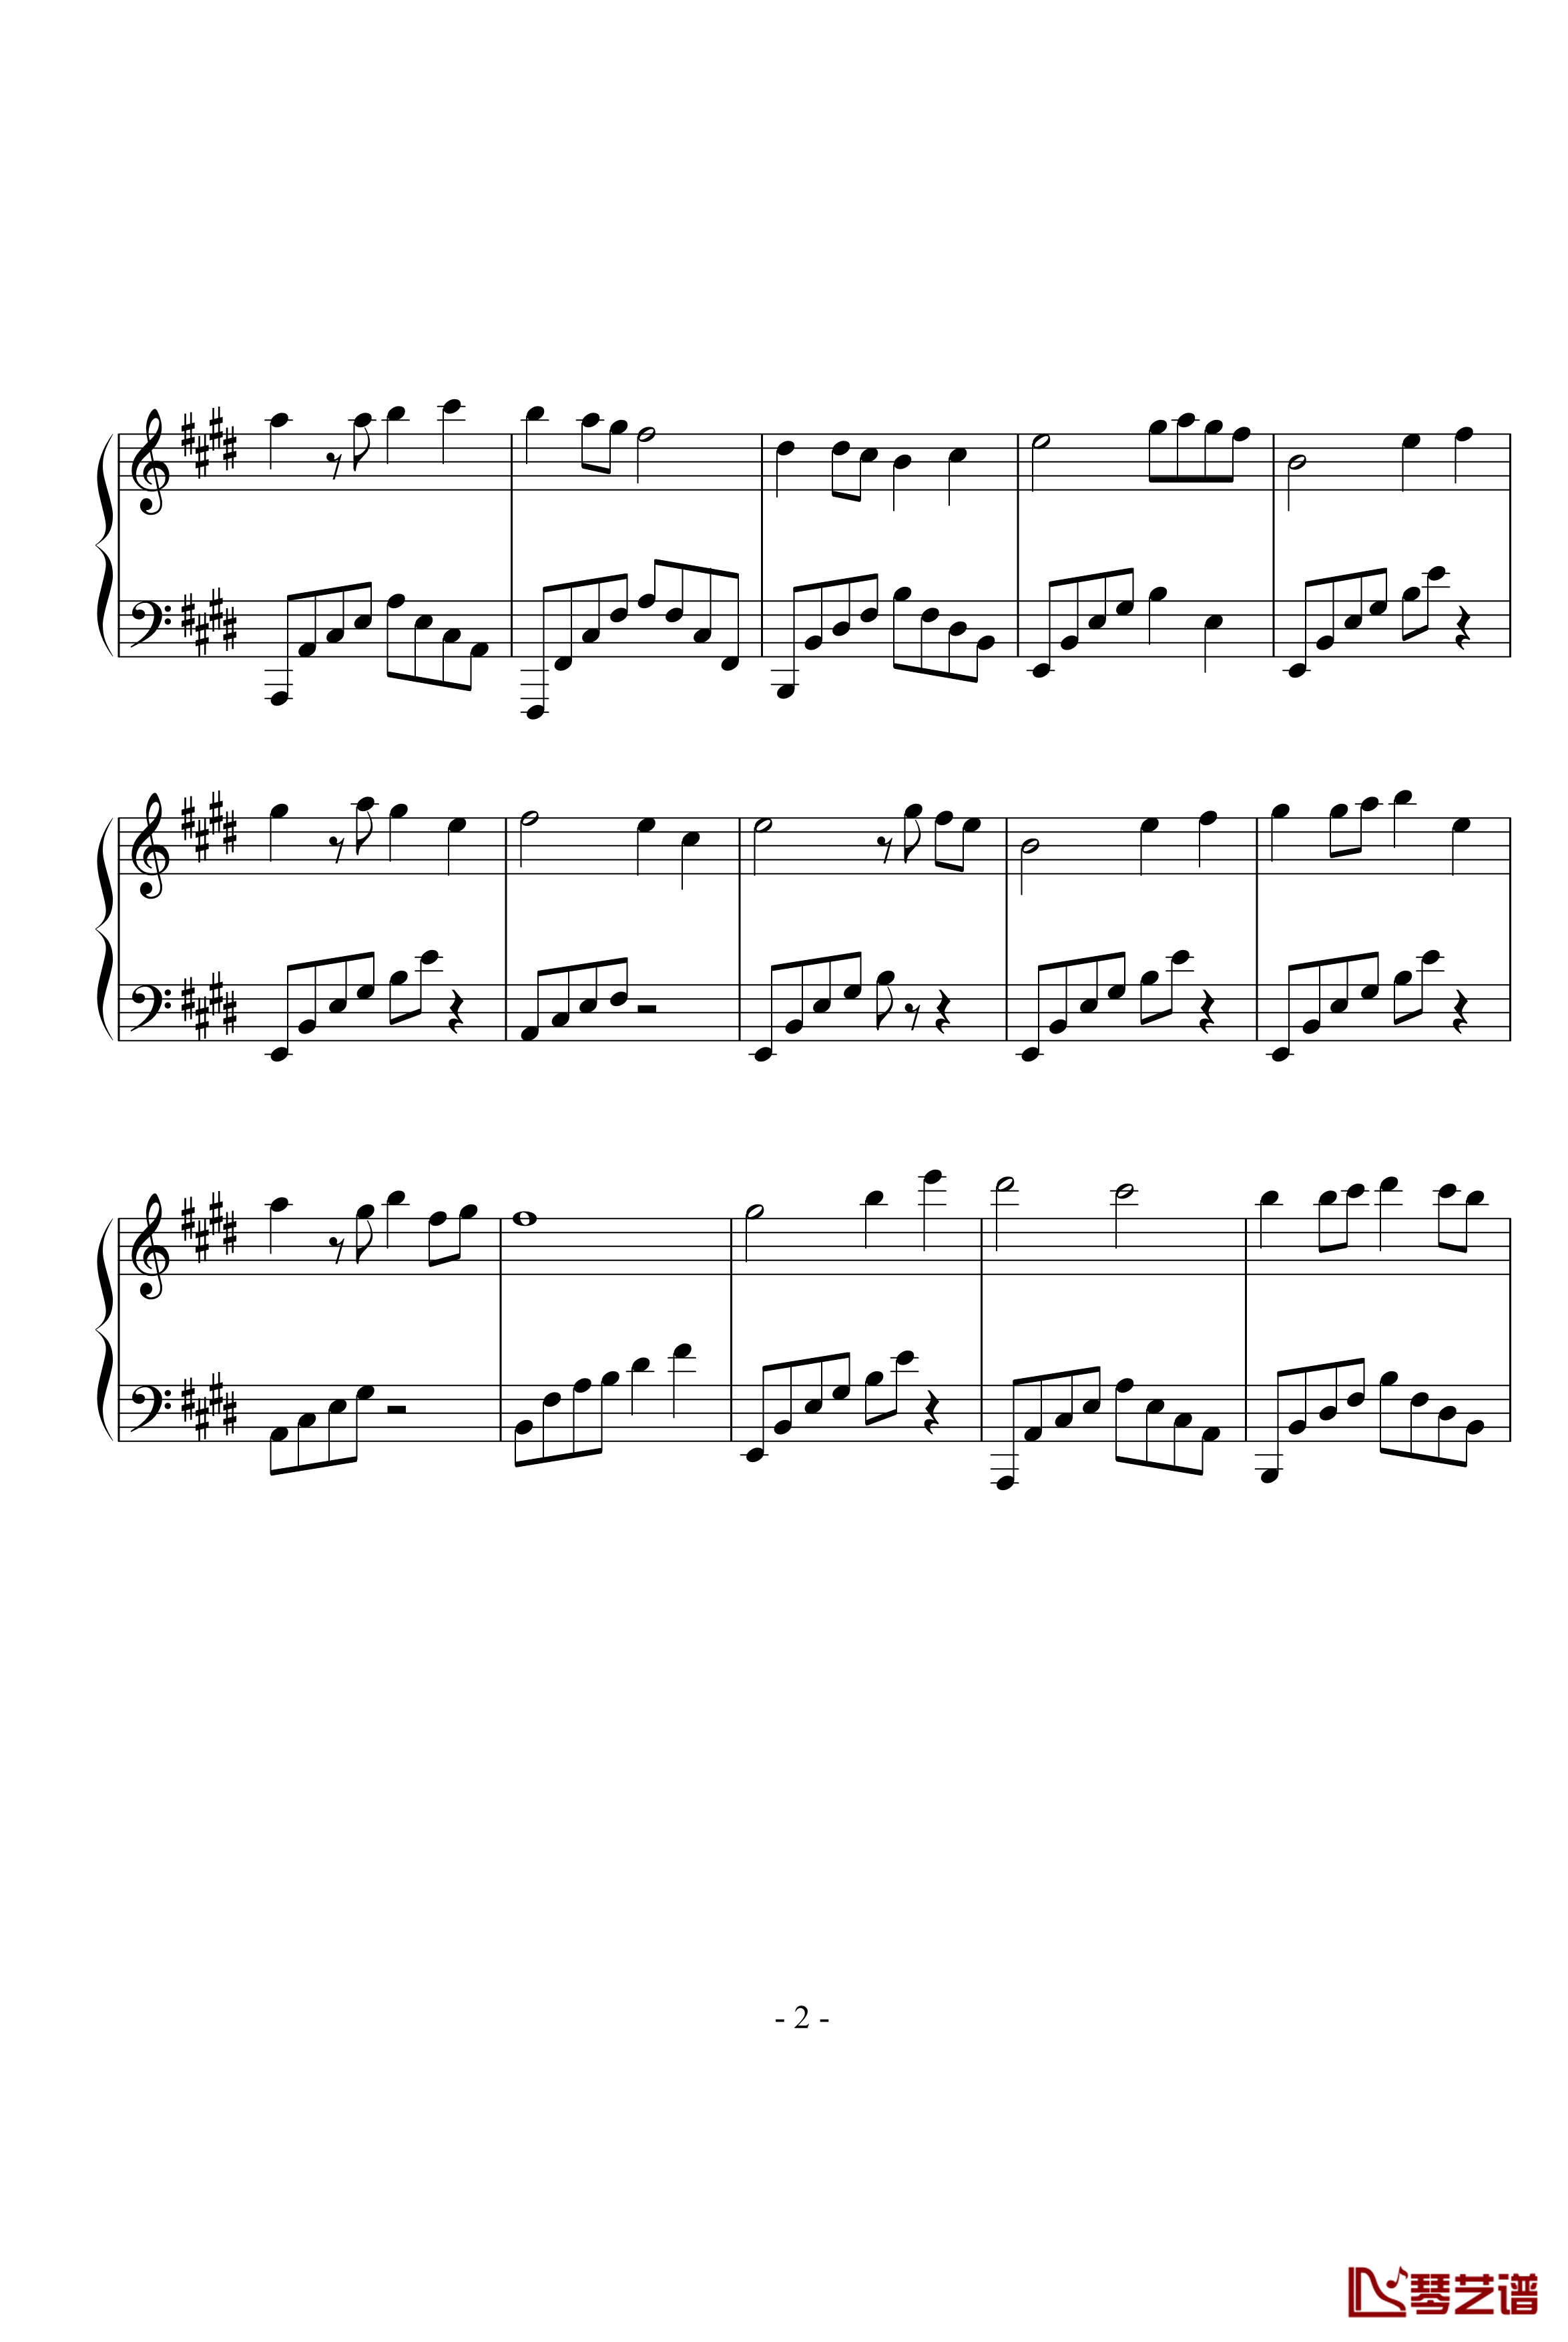 同一首歌钢琴谱-完整版-毛阿敏2